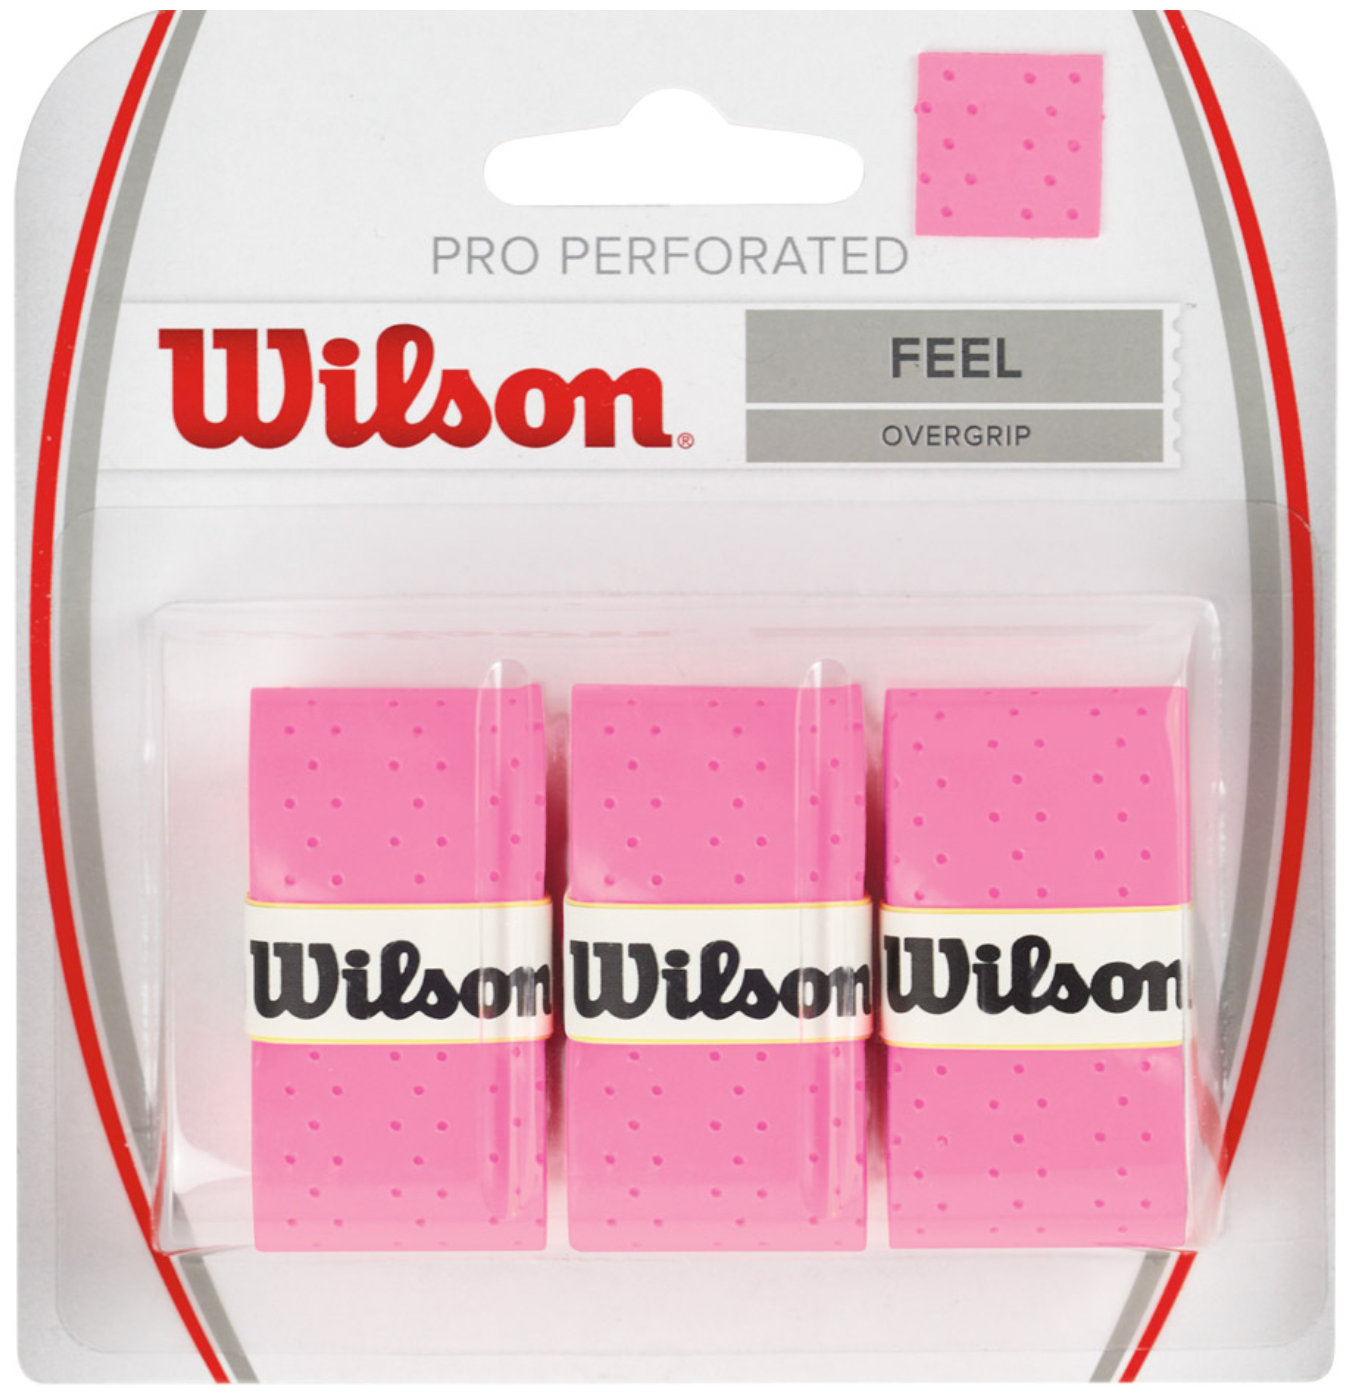 Намотка верхняя Wilson PRO Perforated FEEL 3шт. Розовый